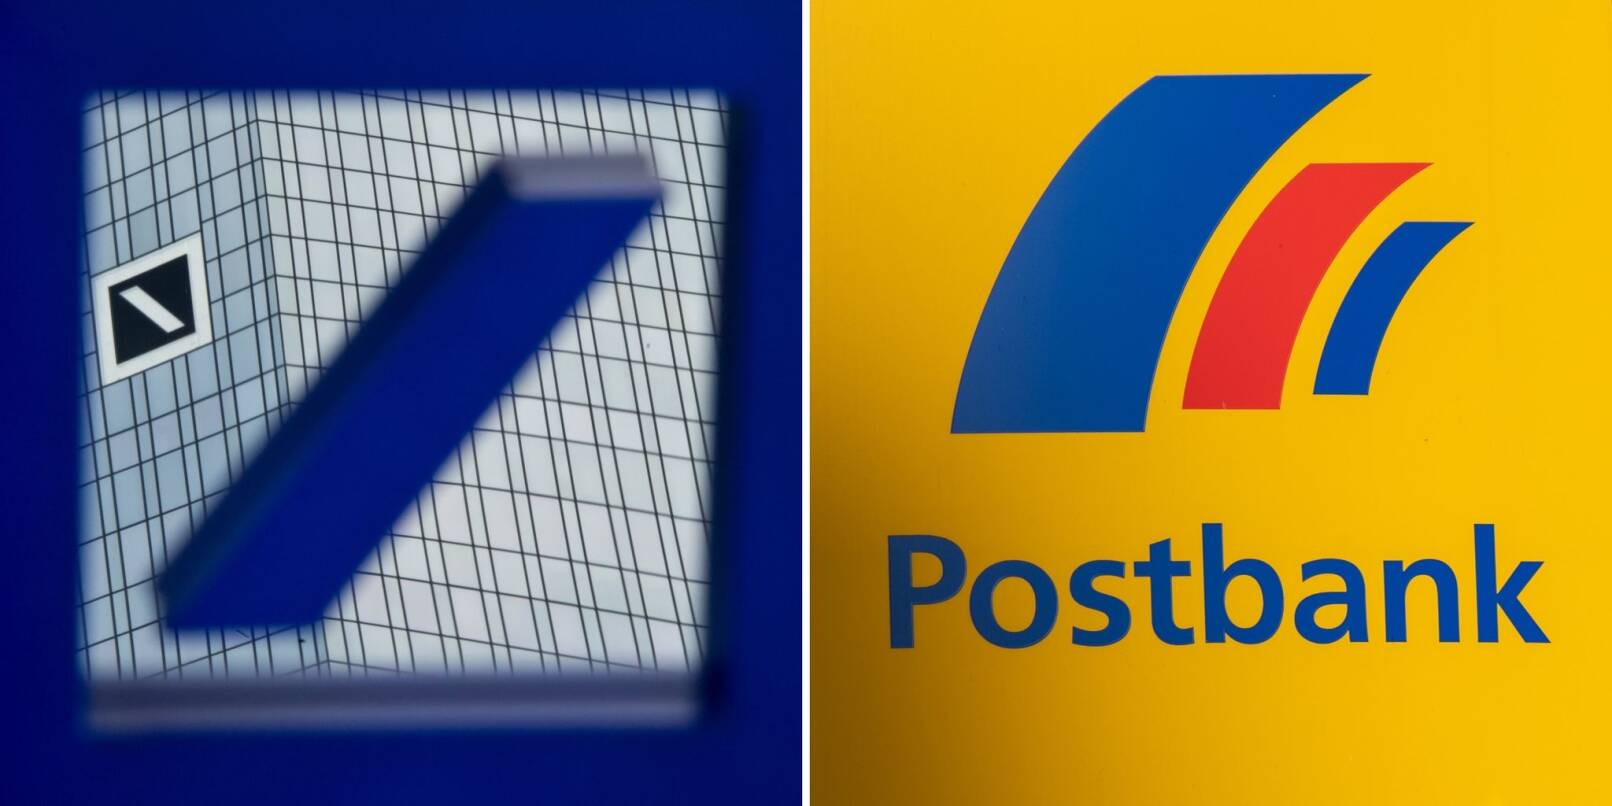 Archivbilder zeigen die Zentrale der Deutschen Bank (l) in Frankfurt am Main, in einem Spiegel mit dem Logo, und ein Schild mit dem Logo der Postbank an der Fassade einer Postbankfiliale.